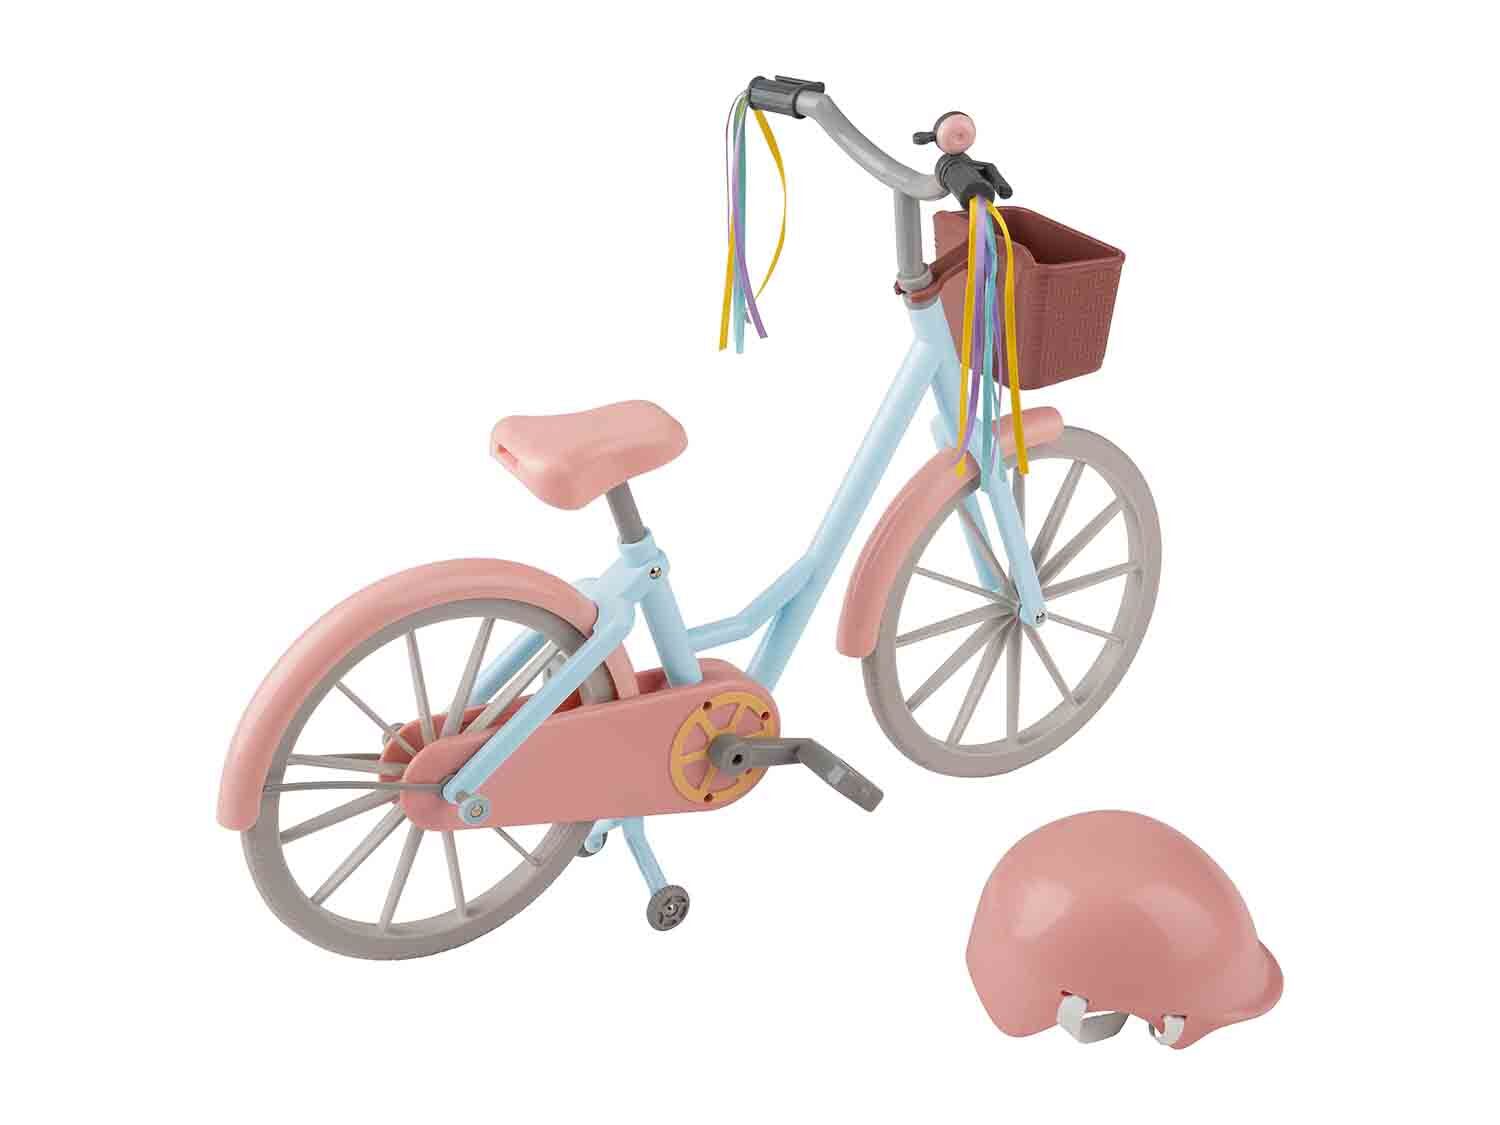 Bicicleta y casco para muñeca